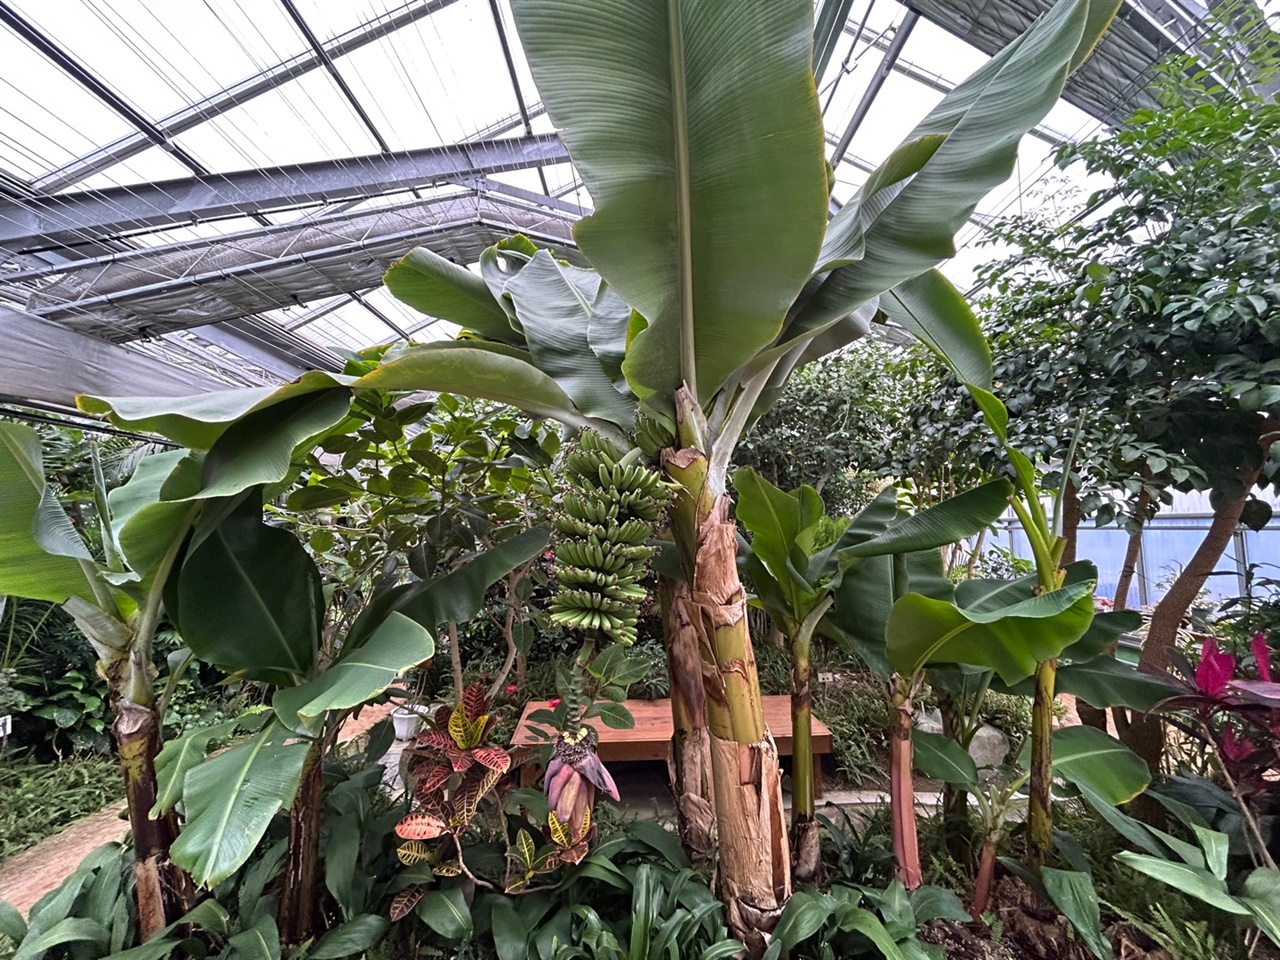 홍성군농업기술센터 내에 있는 온실 '들빛'에는  천장까지 뻗어있는 바나나 나무에는 실제 바나나가 매달려 있어 눈길을 끄는 등 색다른 모습을 제공했다.